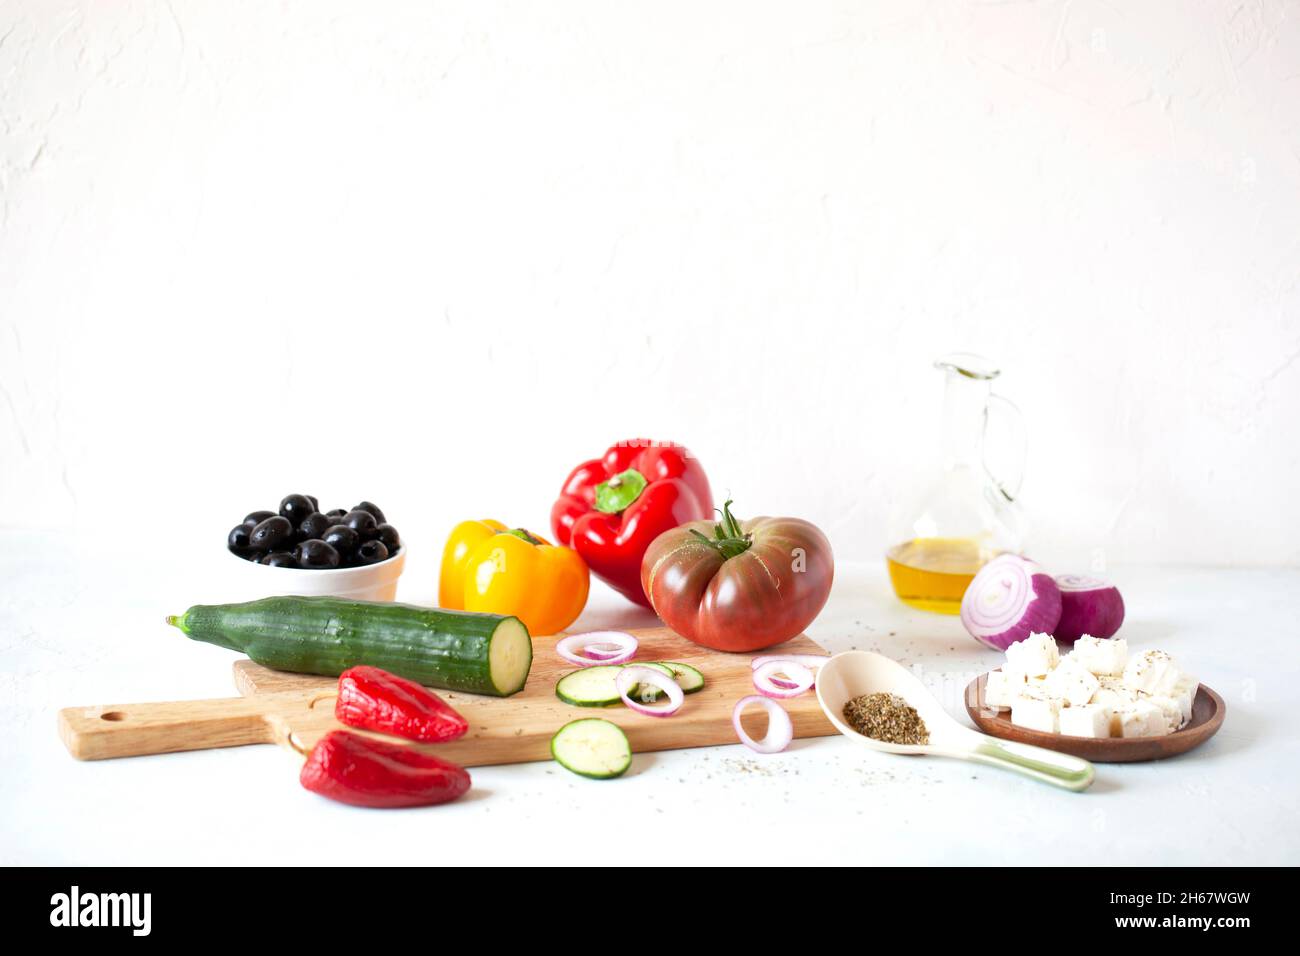 insalata greca ingredienti su sfondo bianco, ricetta originale, copyspace Foto Stock